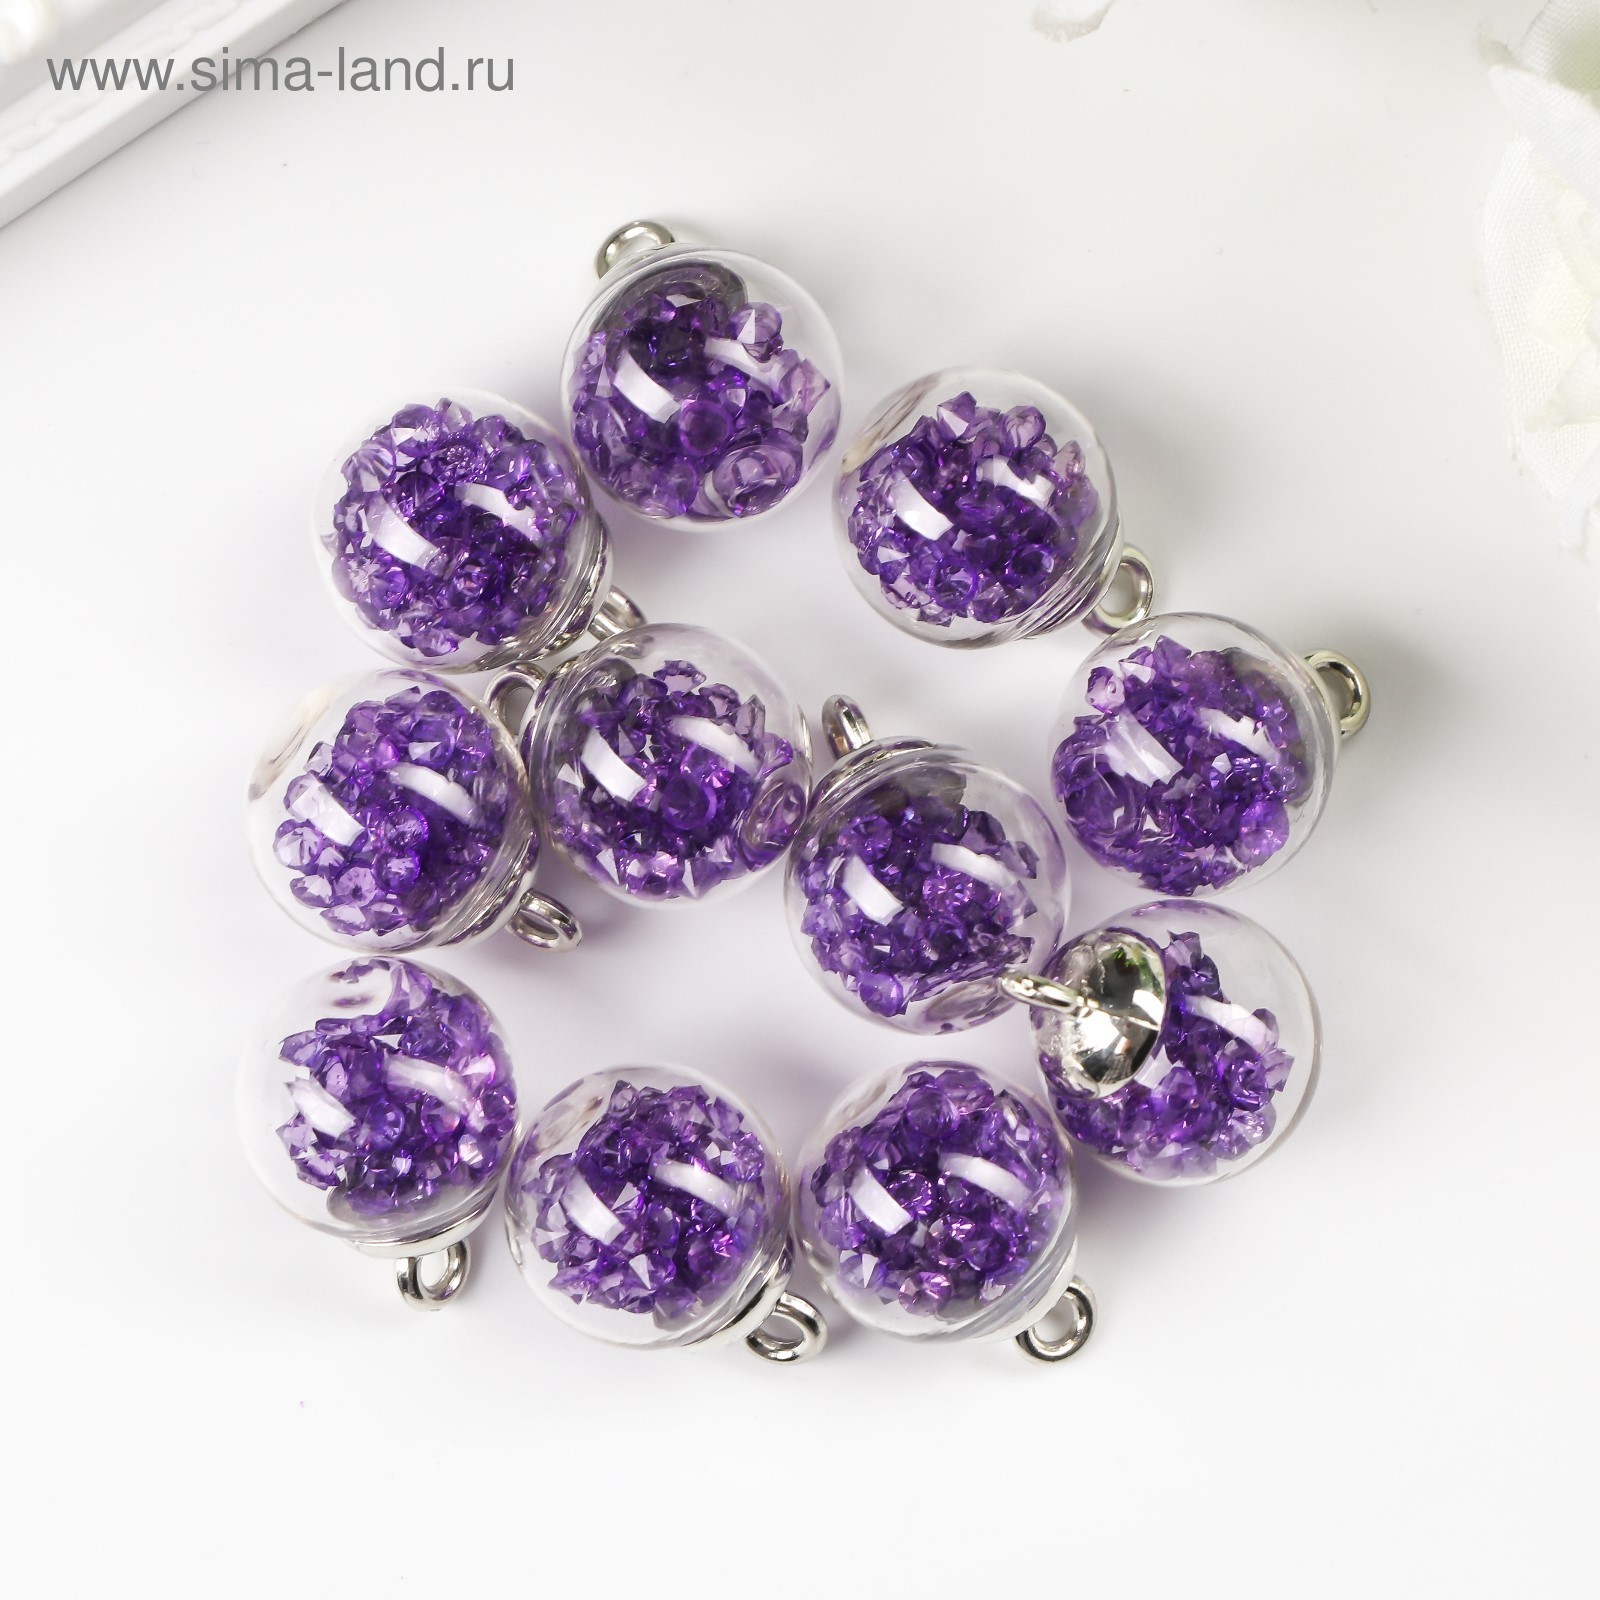 Подвеска-шарик серебро с кристаллами Фиолетовый, 1 шт